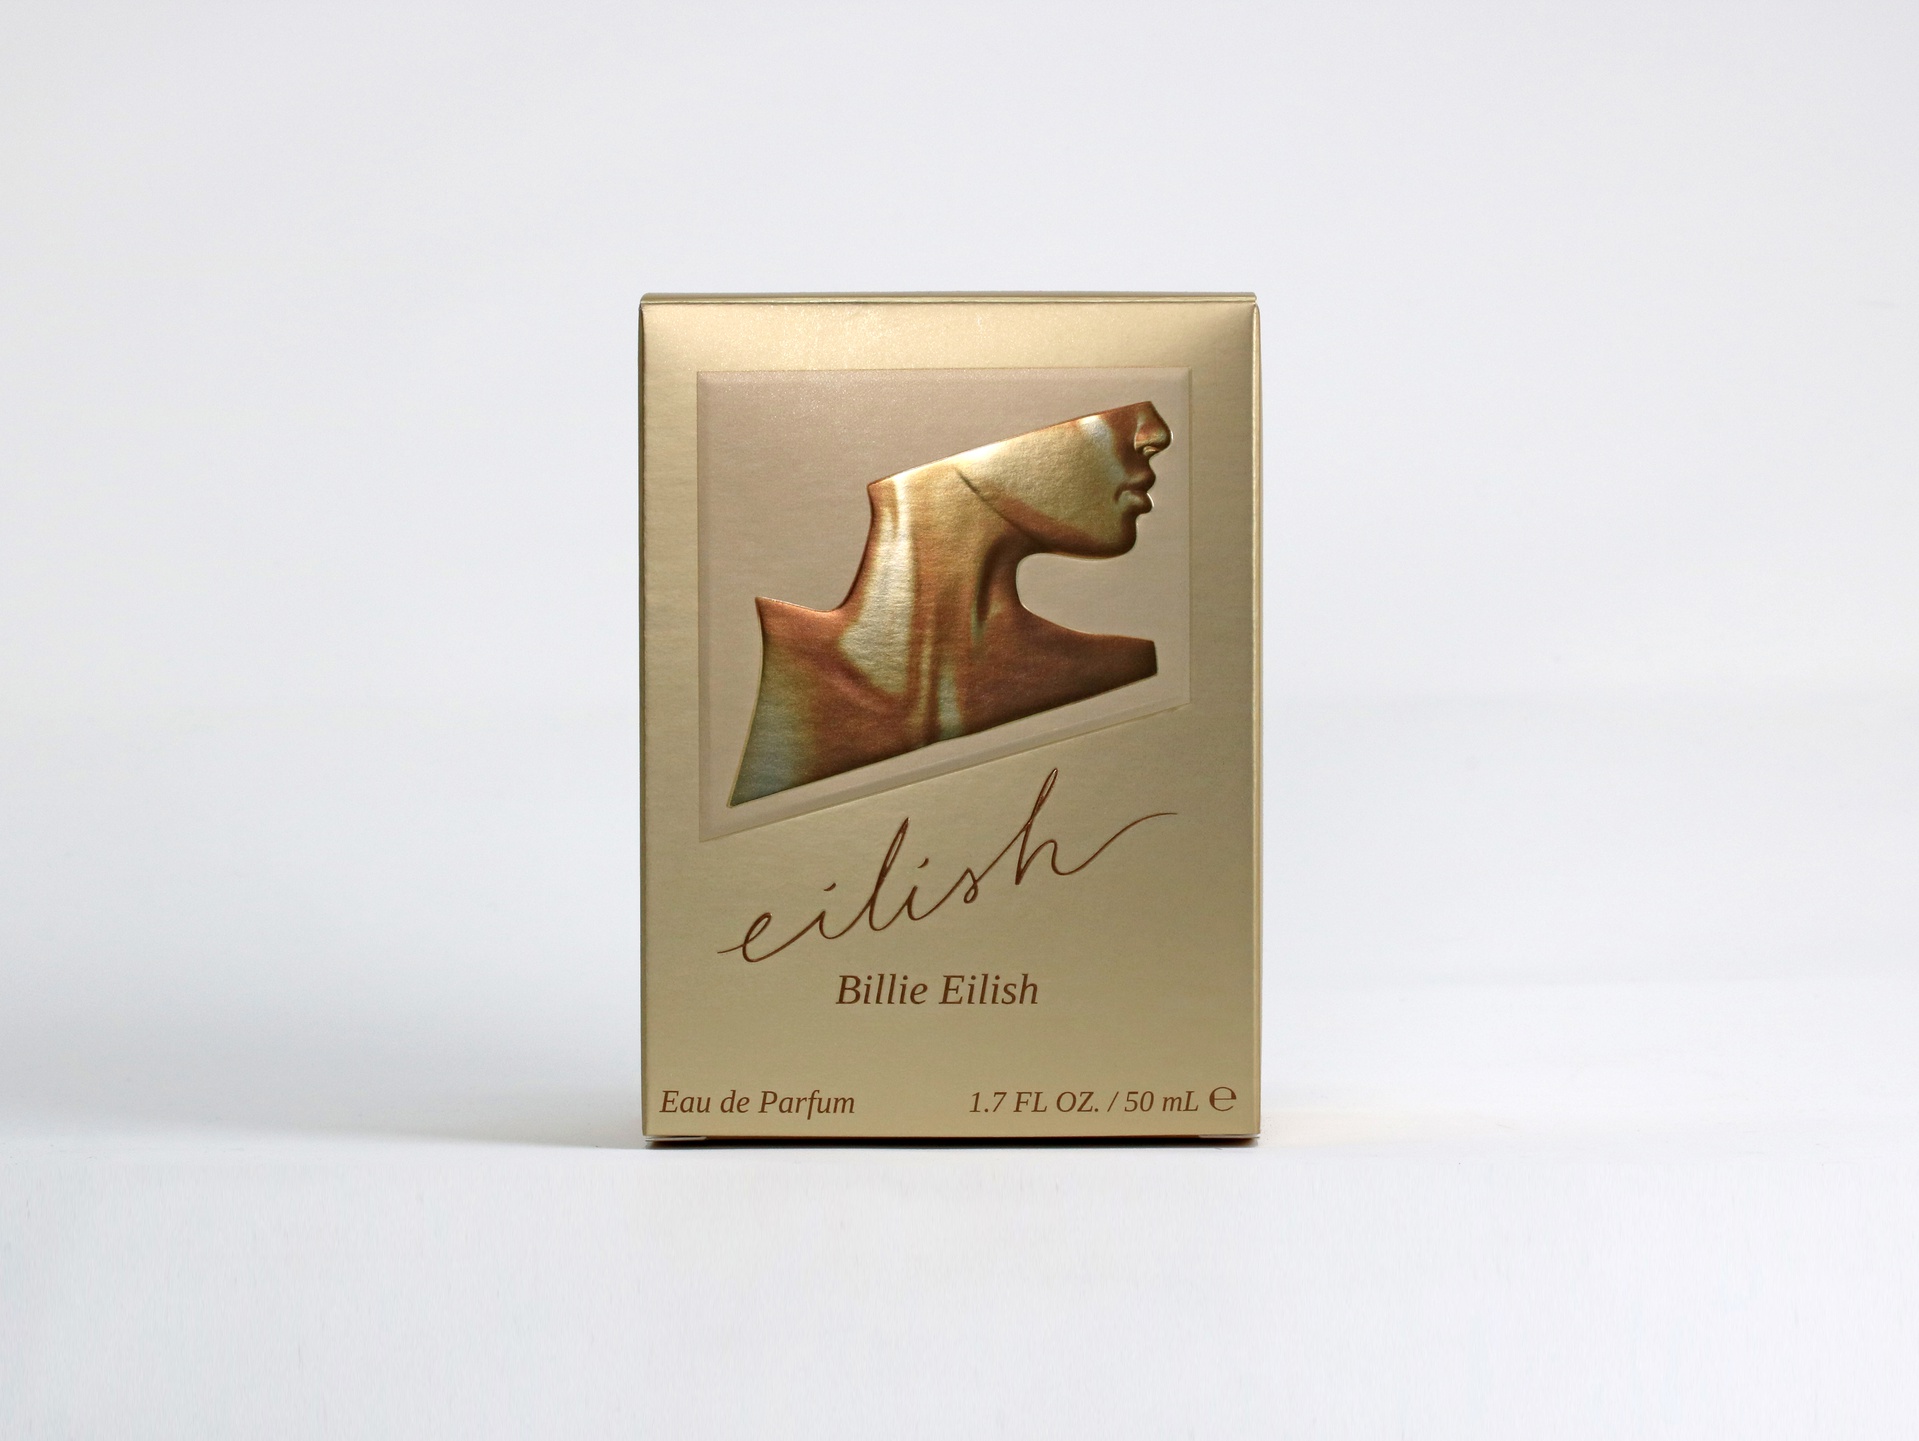 Eilish by Billie Eilish packaging